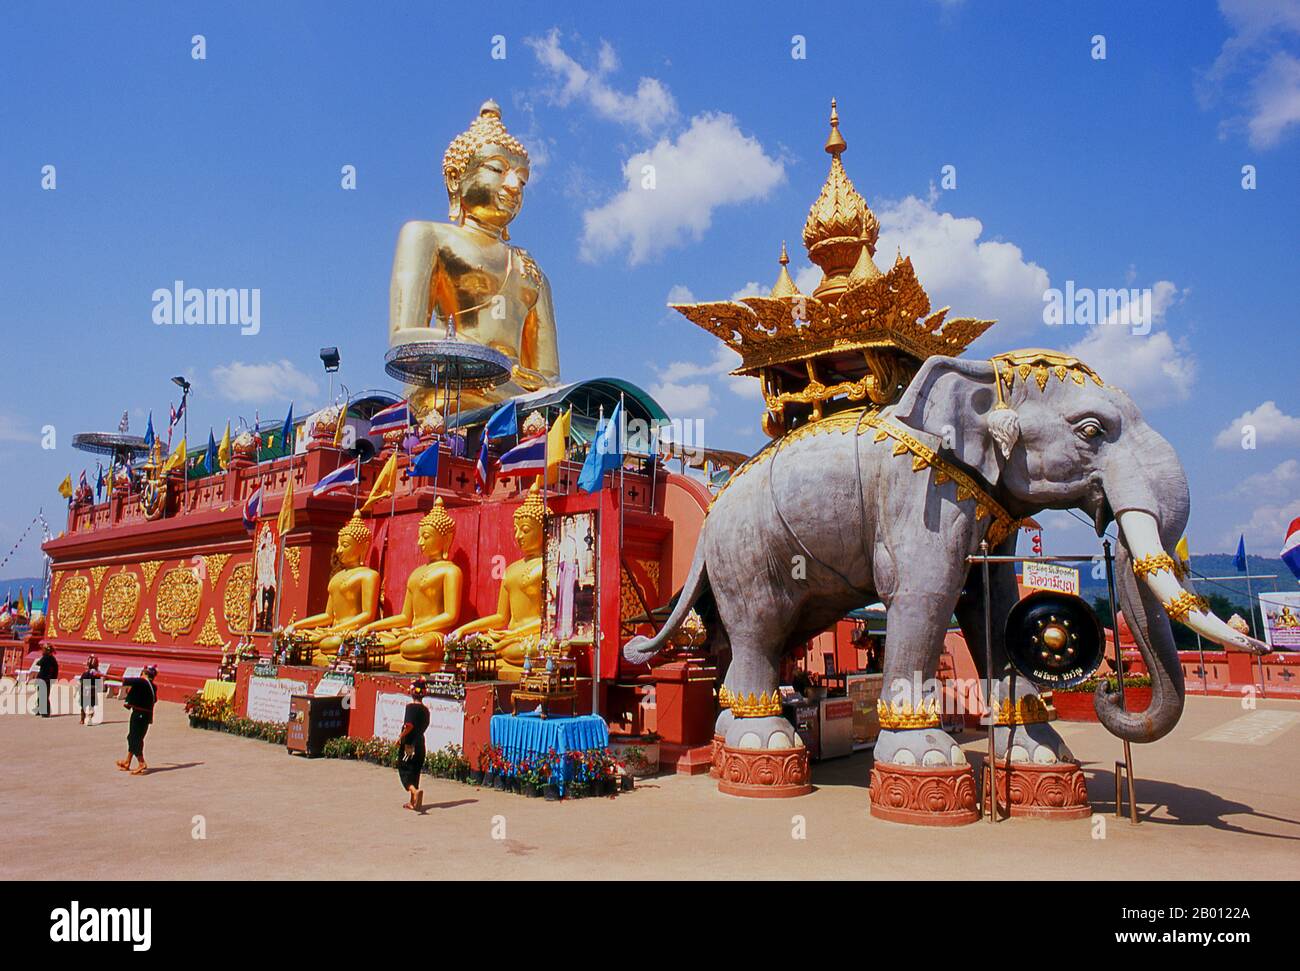 Thailand: Der riesige goldene Buddha bei SOP Ruak (im Herzen des Goldenen Dreiecks) in der Nähe von Chiang Saen, Provinz Chiang Rai, Nordthailand. Das Goldene Dreieck bezeichnet den Zusammenfluss des Ruak-Flusses und des Mekong-Flusses, der Kreuzung von Thailand, Laos und Myanmar. Stockfoto